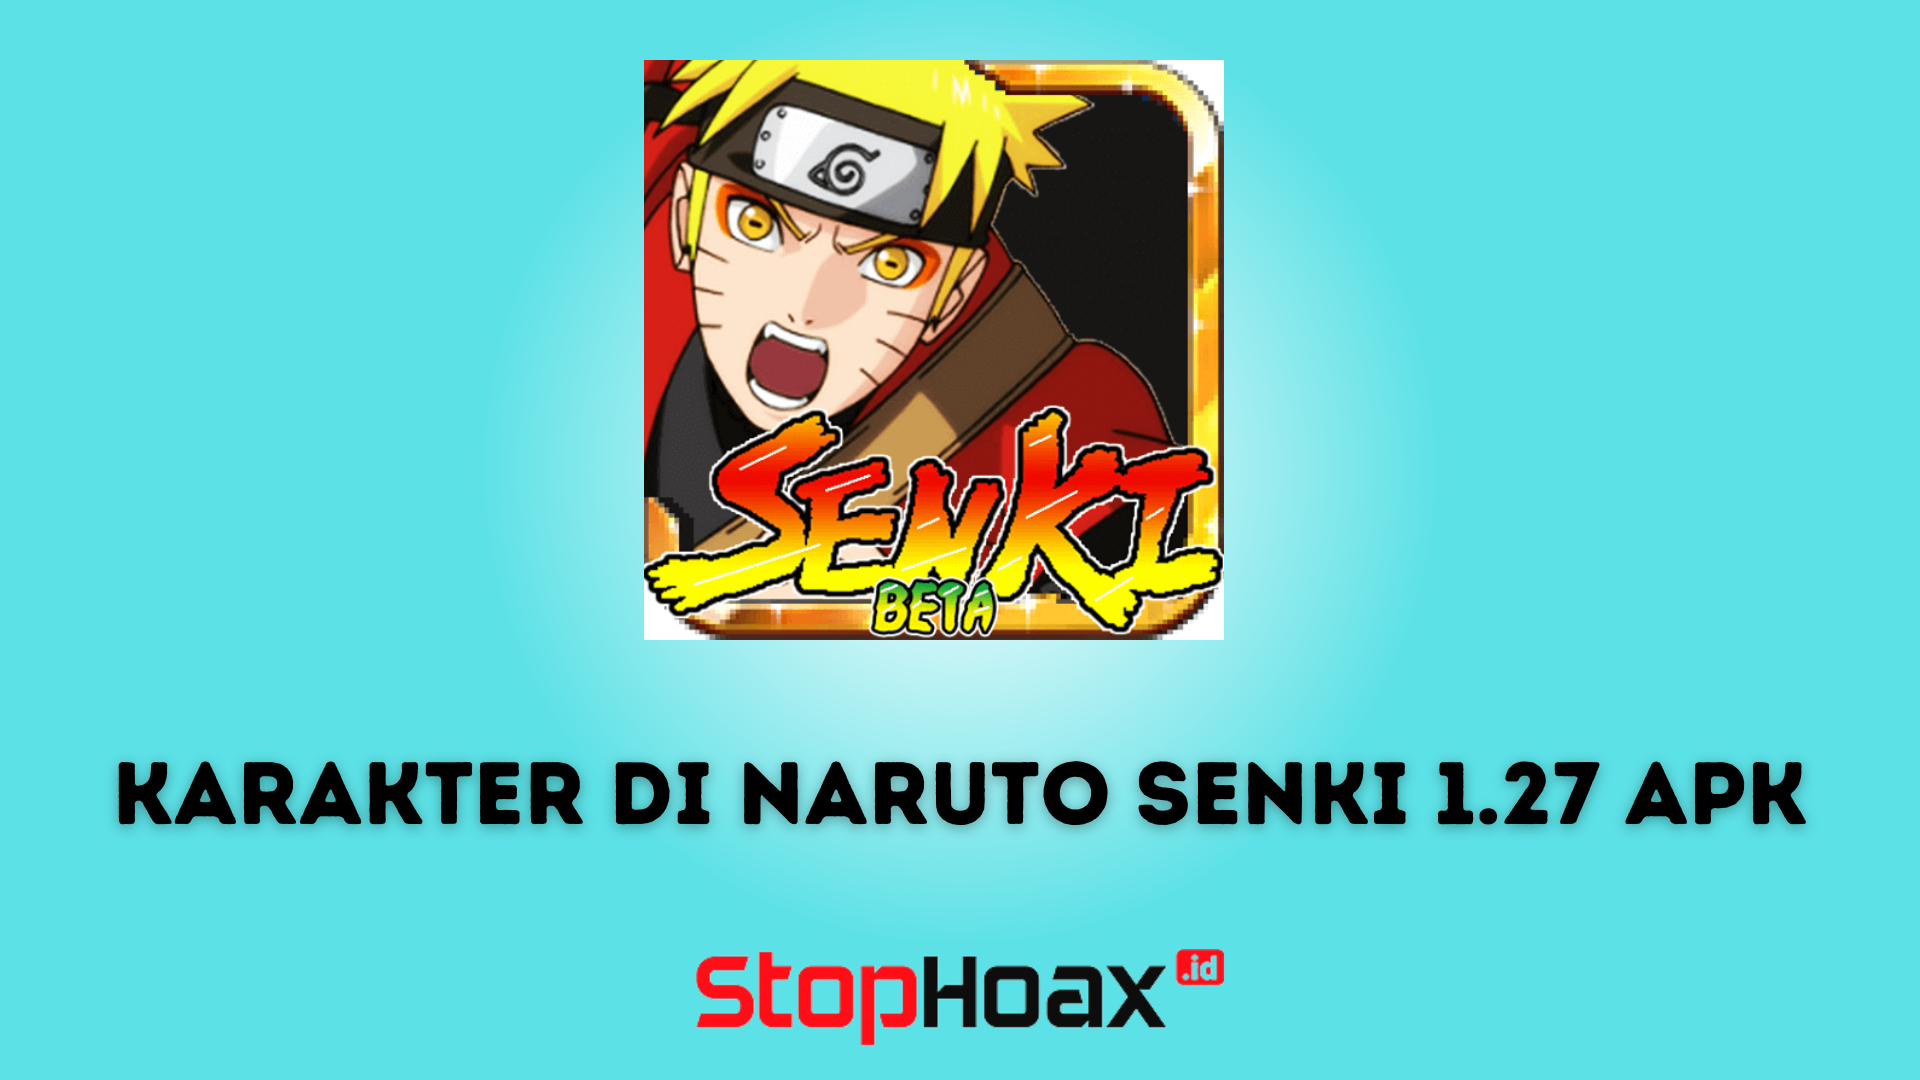 Daftar Karakter Terbaik di Naruto Senki 1.27 APK yang Bisa Kamu Mainkan